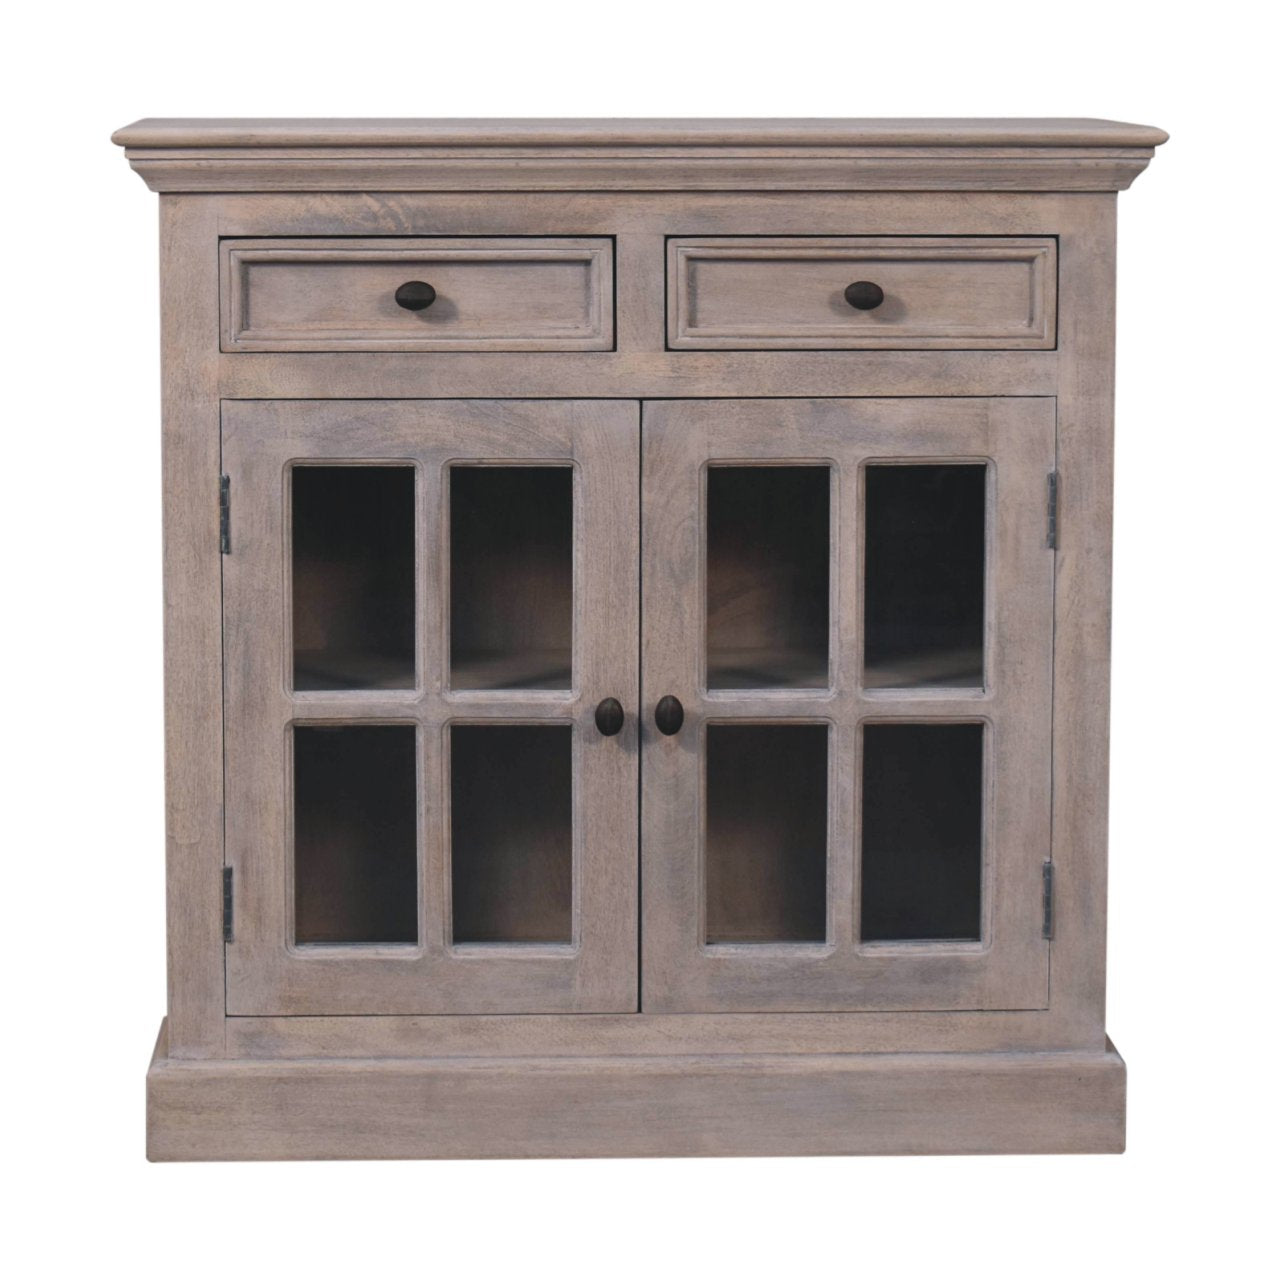 Stone Finish Cabinet with Glazed Doors